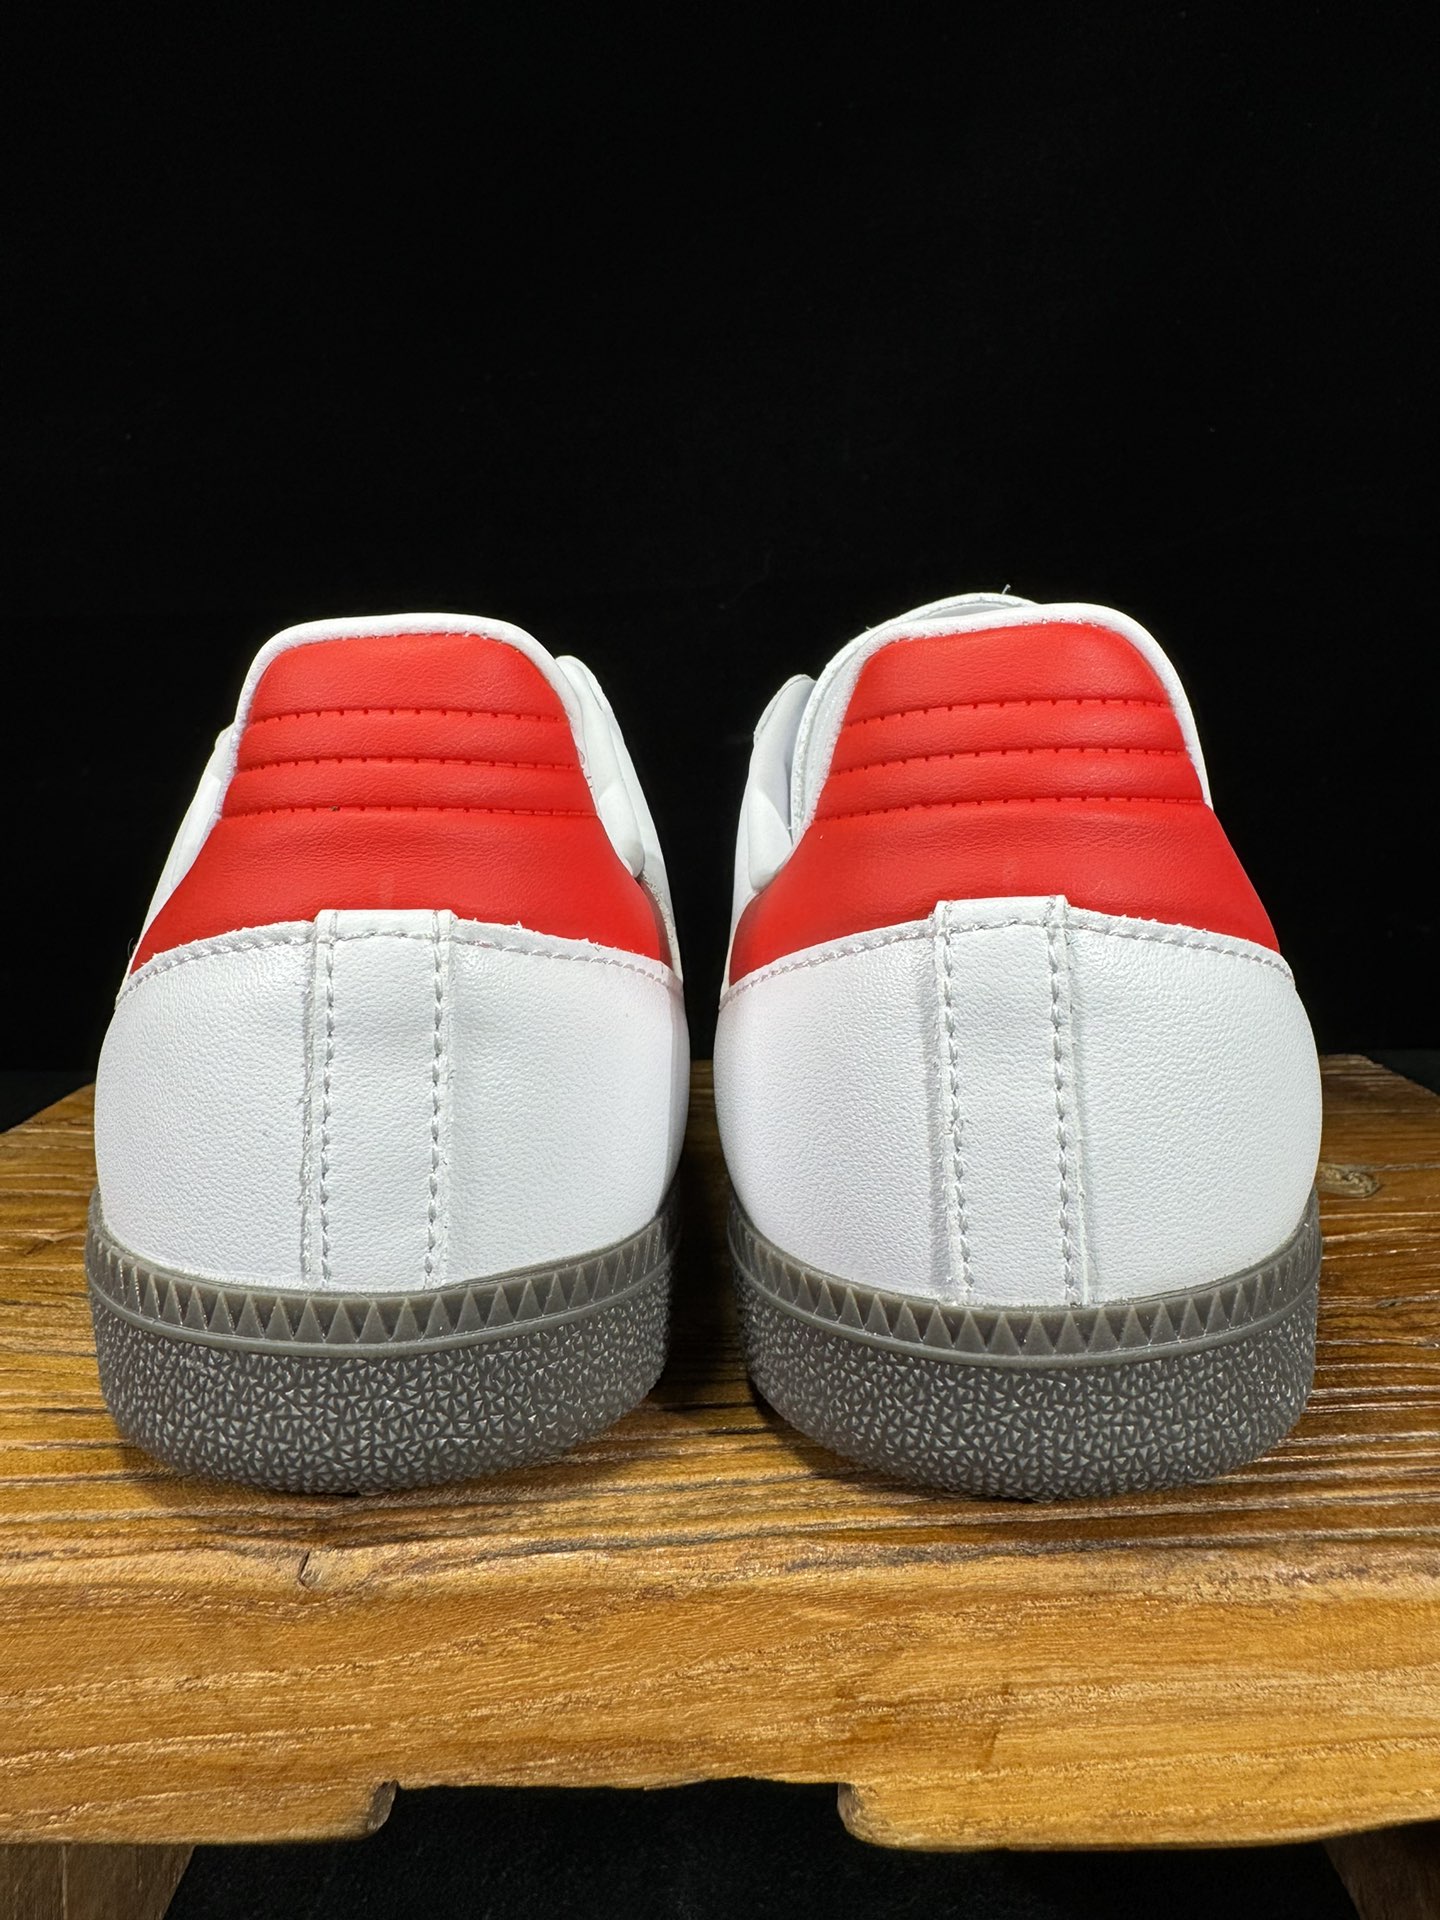 阿迪桑巴德训鞋猩红色Adidas/阿迪达斯SAMBAVEGAN黑白男女低帮经典运动鞋板鞋IG1025尺码